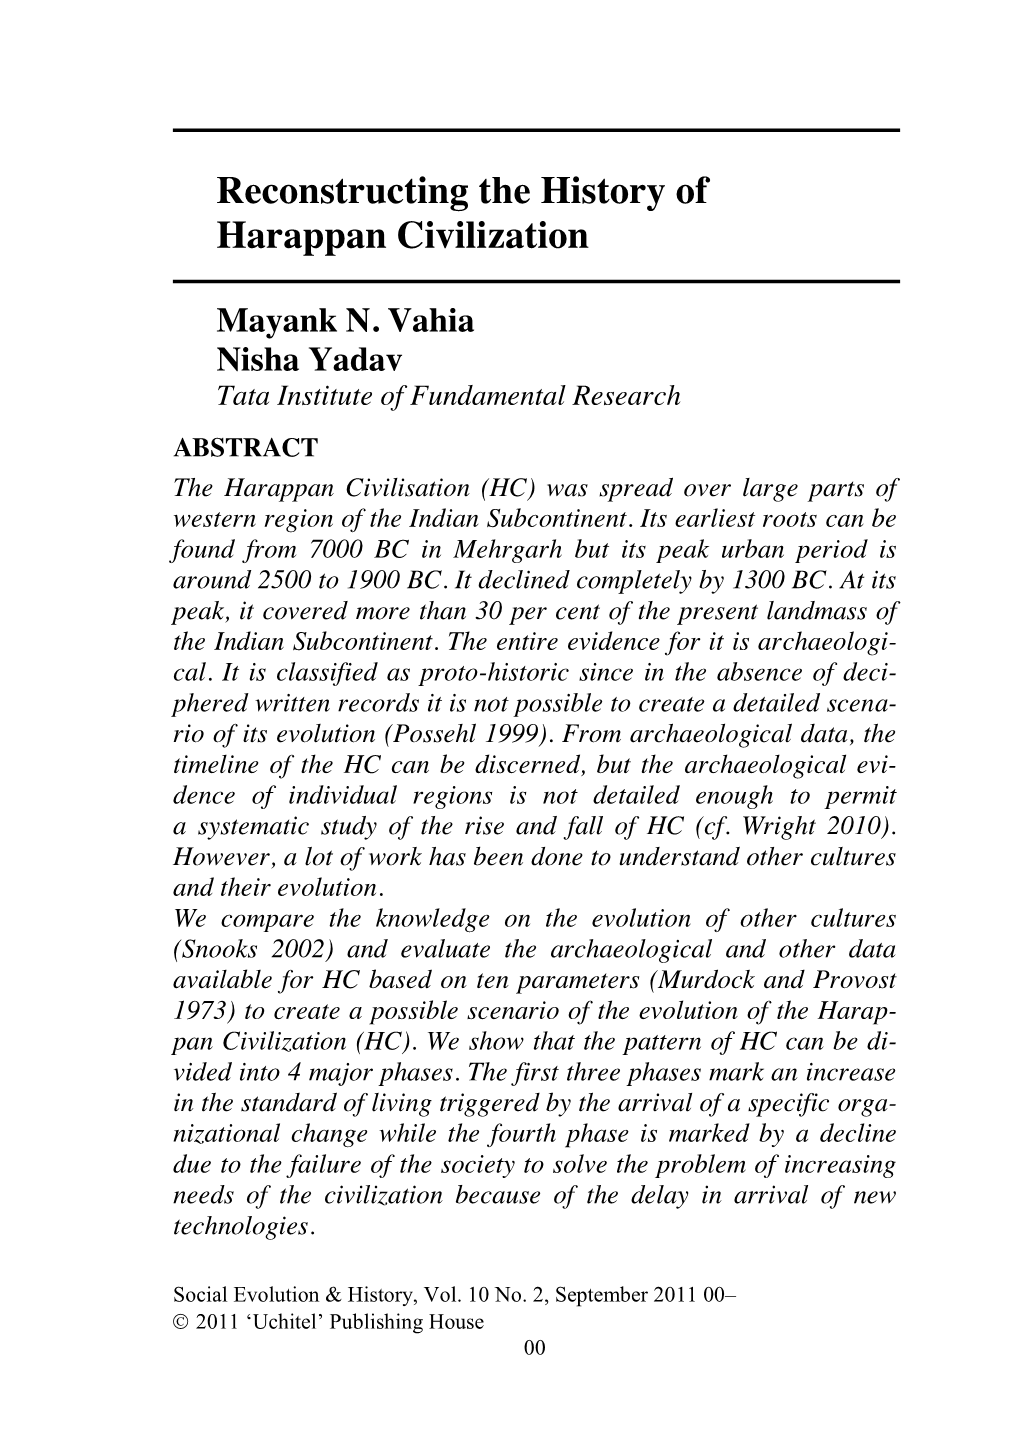 Download Evolution of Harappan Civilisation